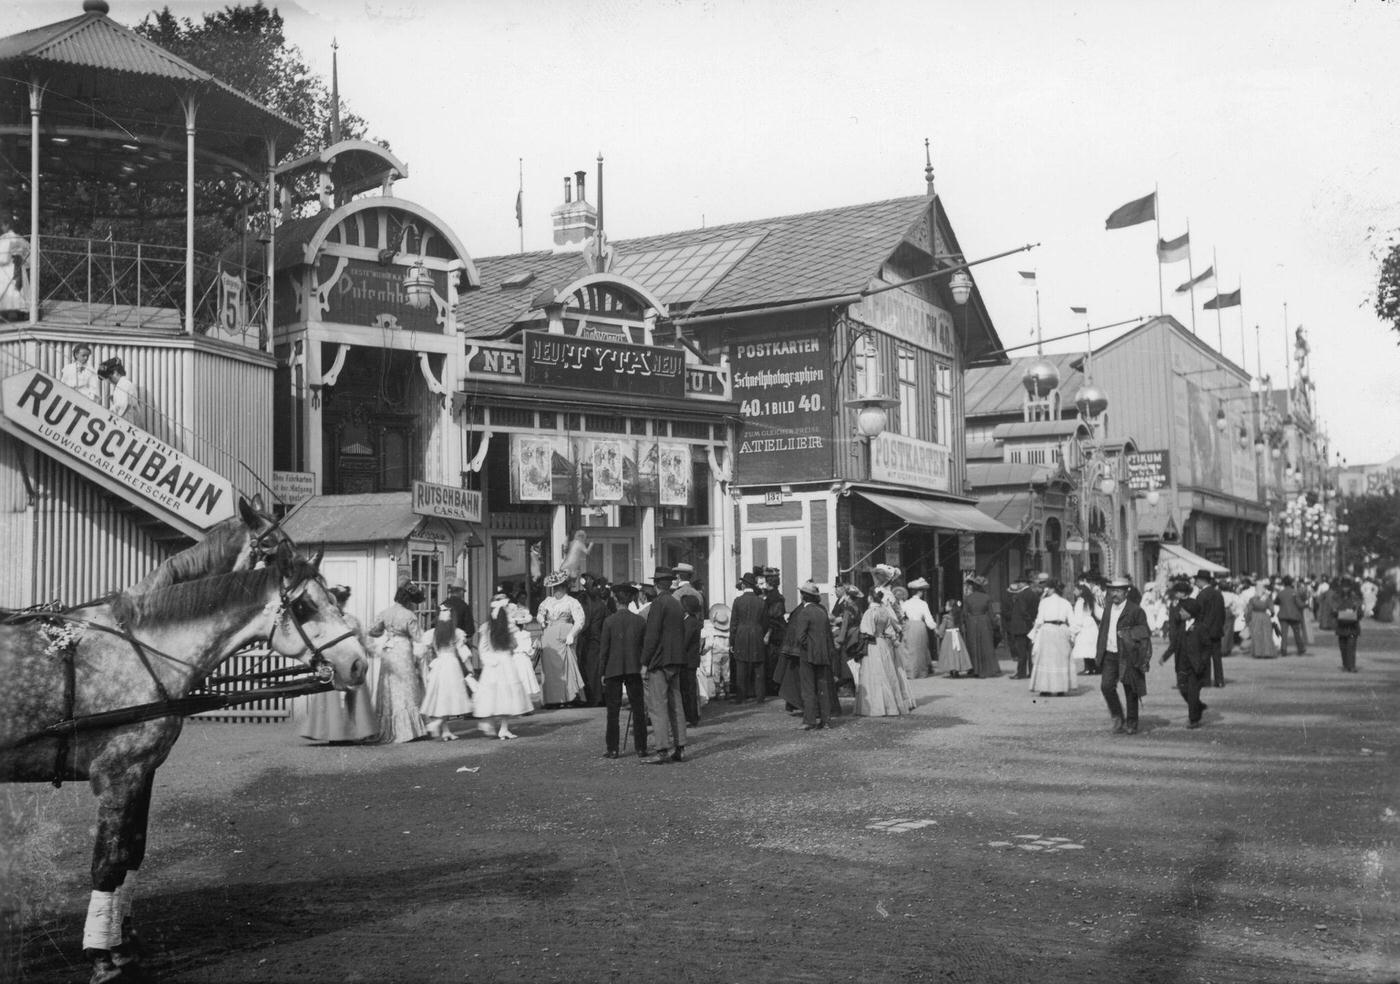 Wurstel Prater amusement park, Around 1900